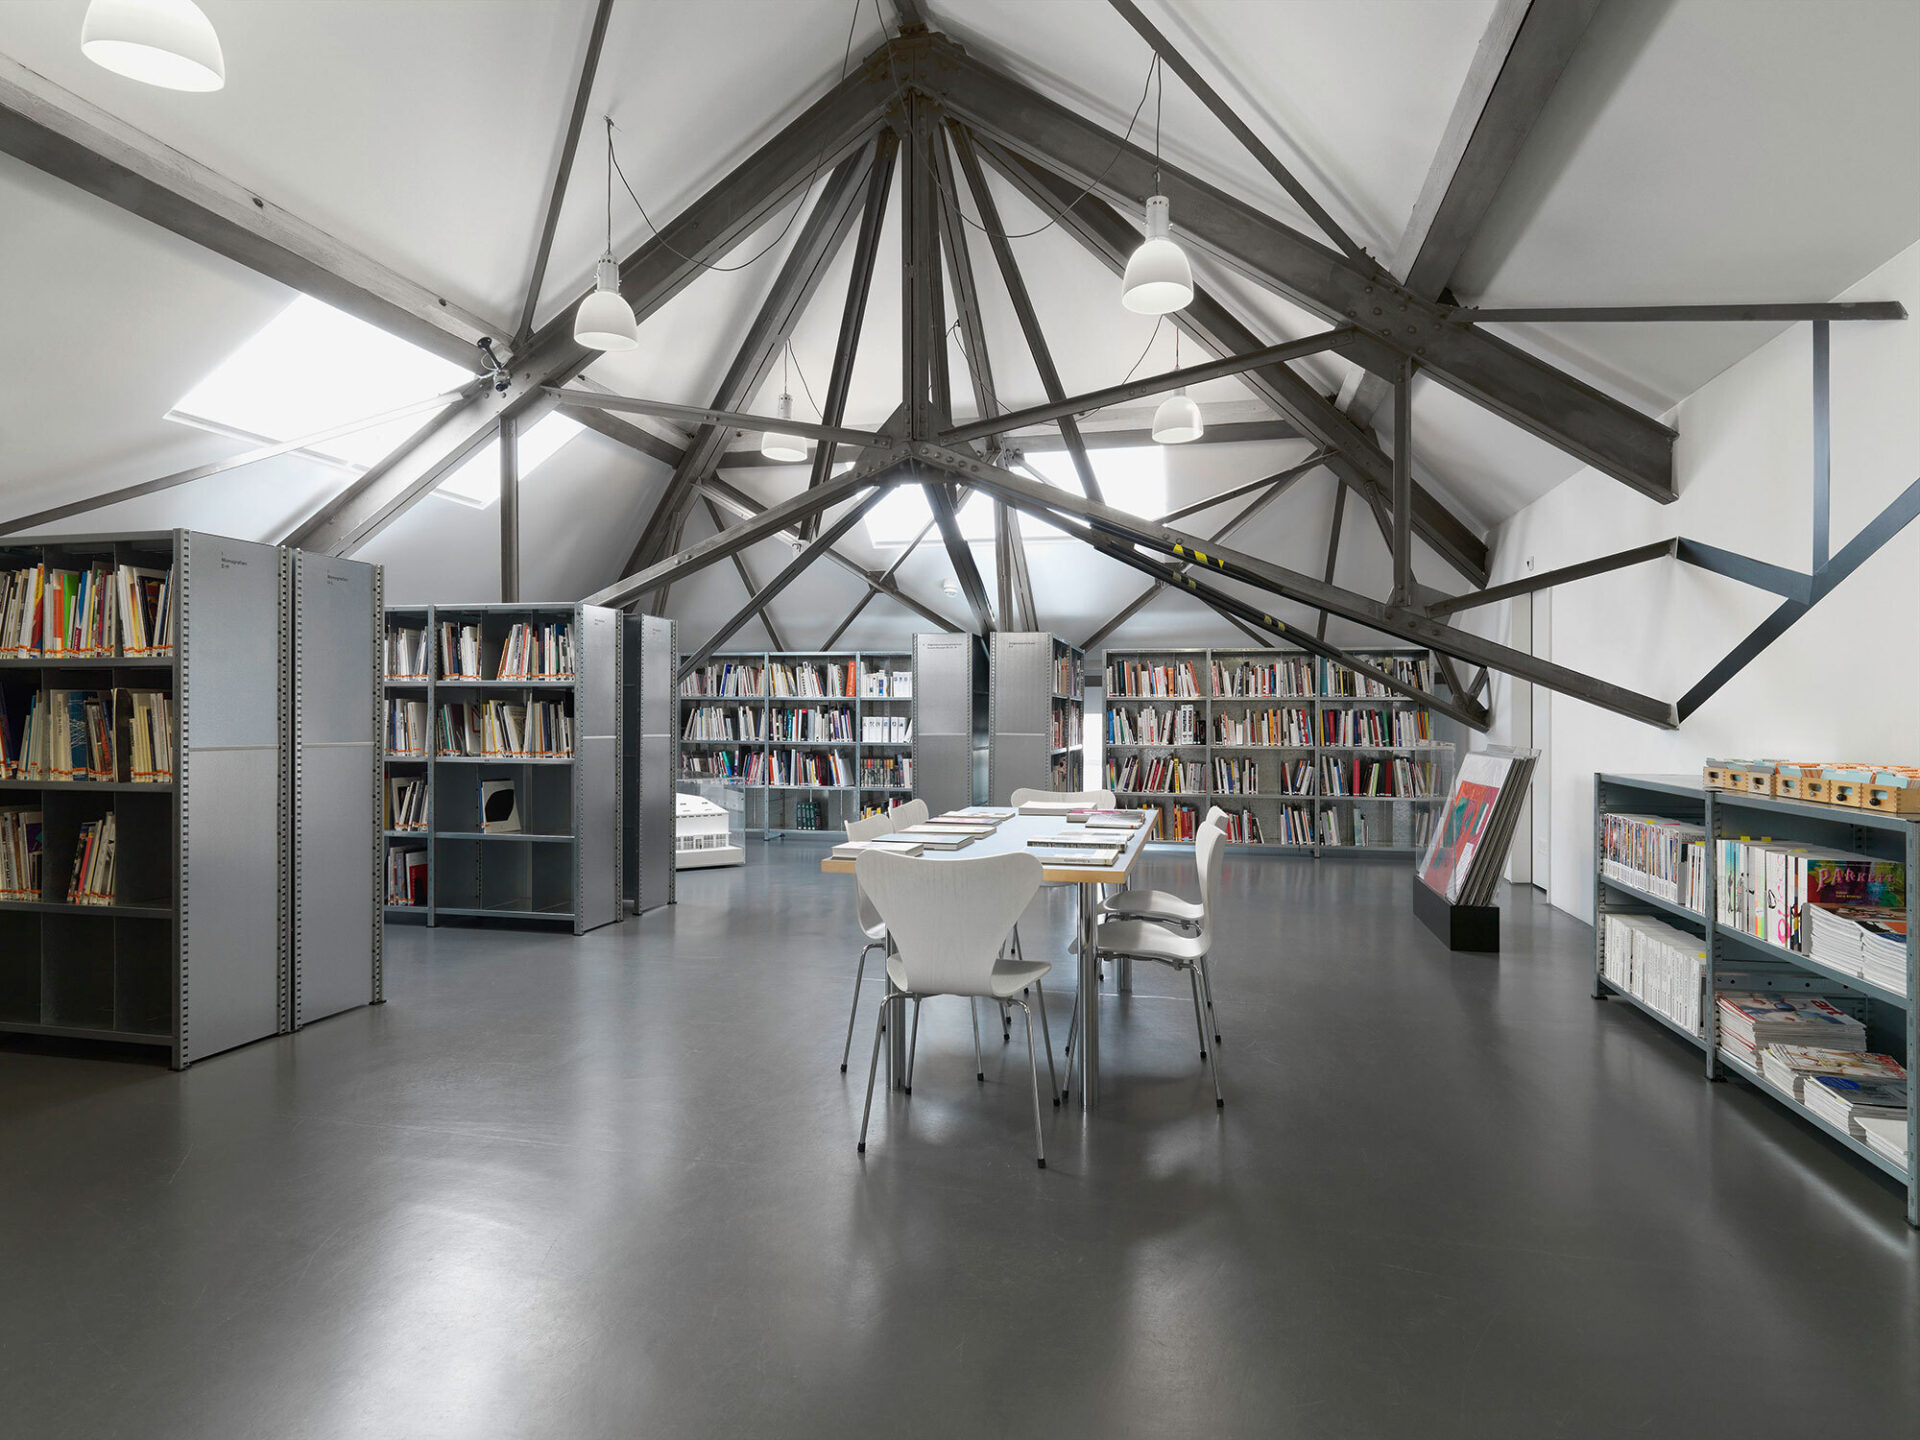 Haus Konstruktiv Bibliothek Altenburger web